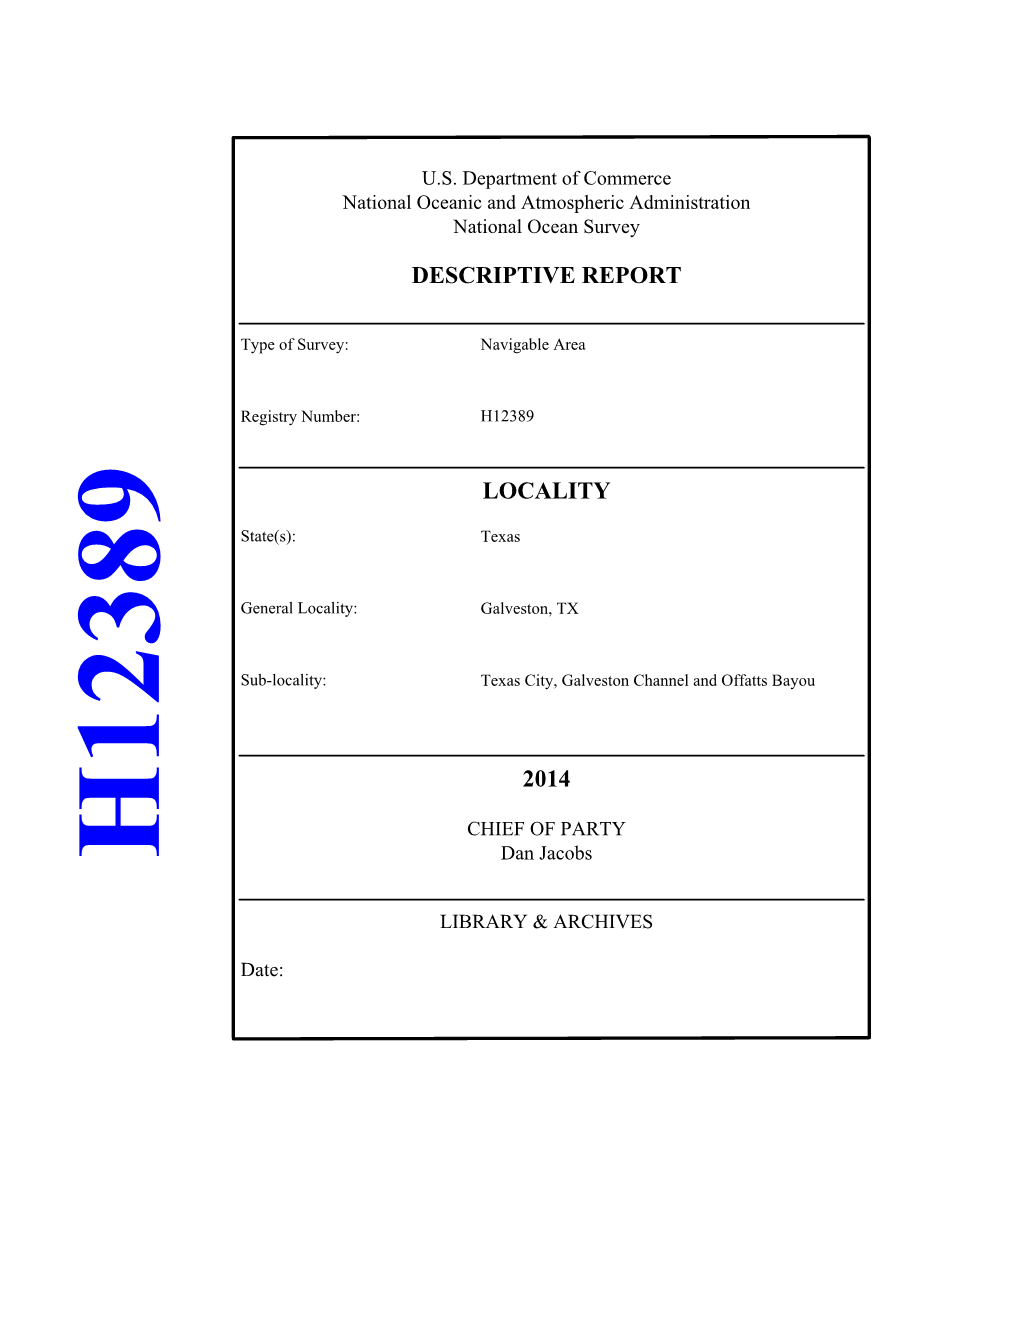 Locality Descriptive Report 2014